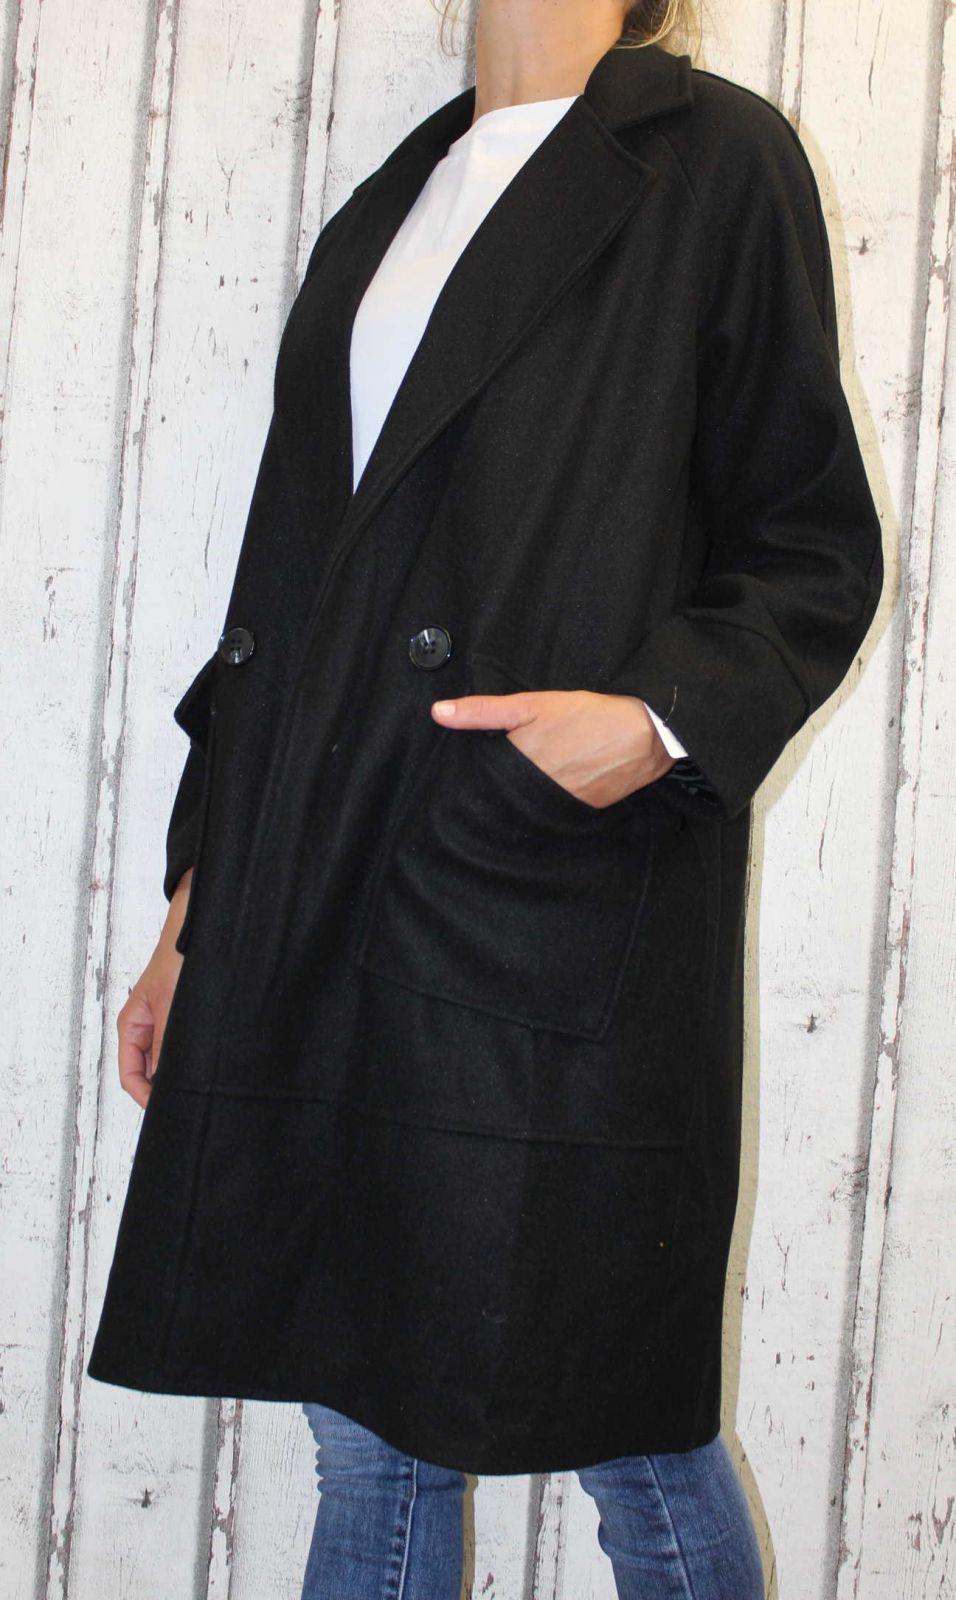 Dámský fleesový kabát, dámský kabátek, jarní kabát, podzimní kabát, dámský černý dlouhý kabát, černý fleesový kabát, dlouhý slabý kabát, kabát s podšívkou, kabát na knoflík, oversize kabát